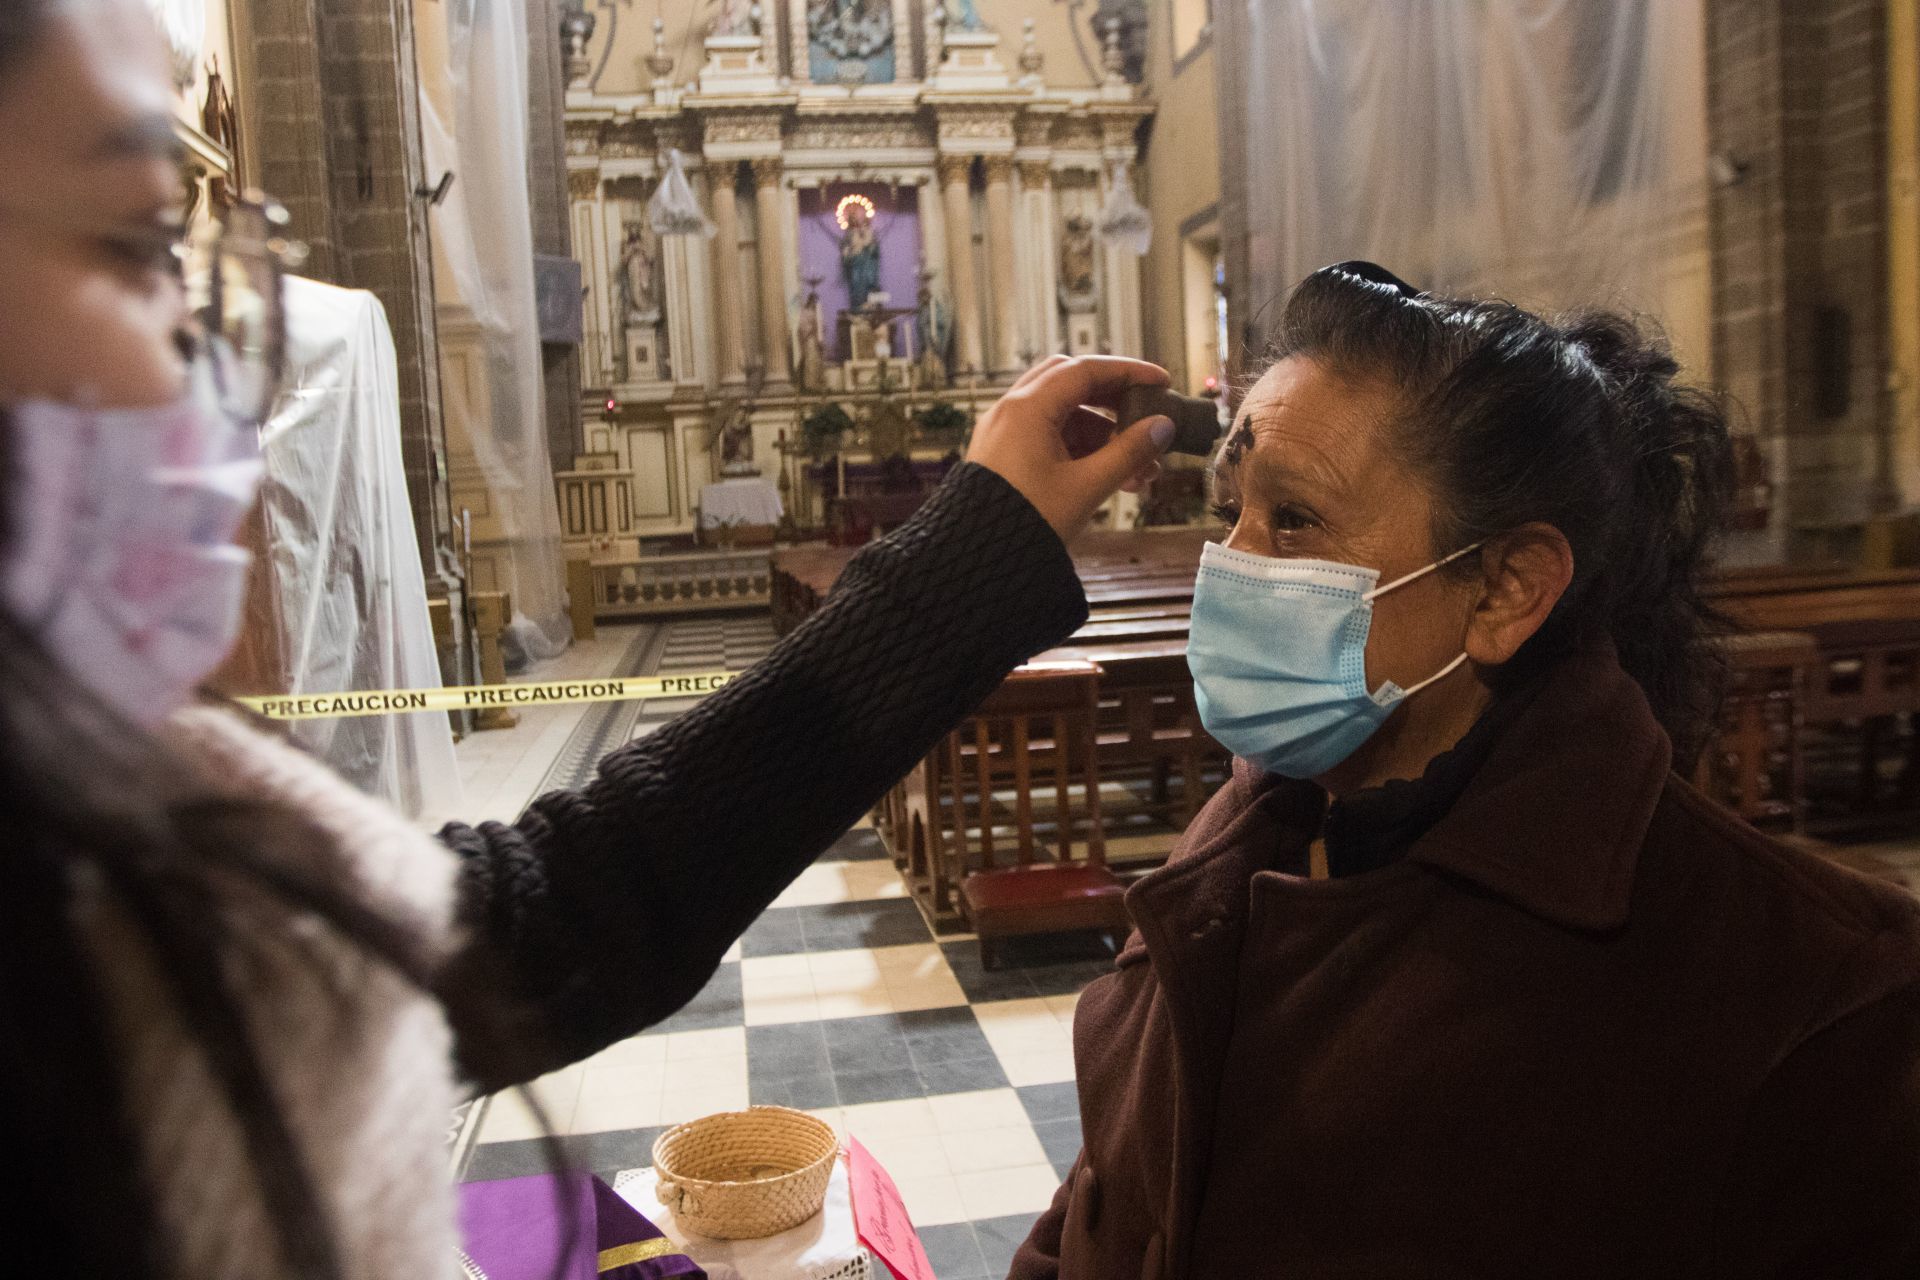 Mujer recibe cenizas este Miércoles de Ceniza durante pandemia del covid